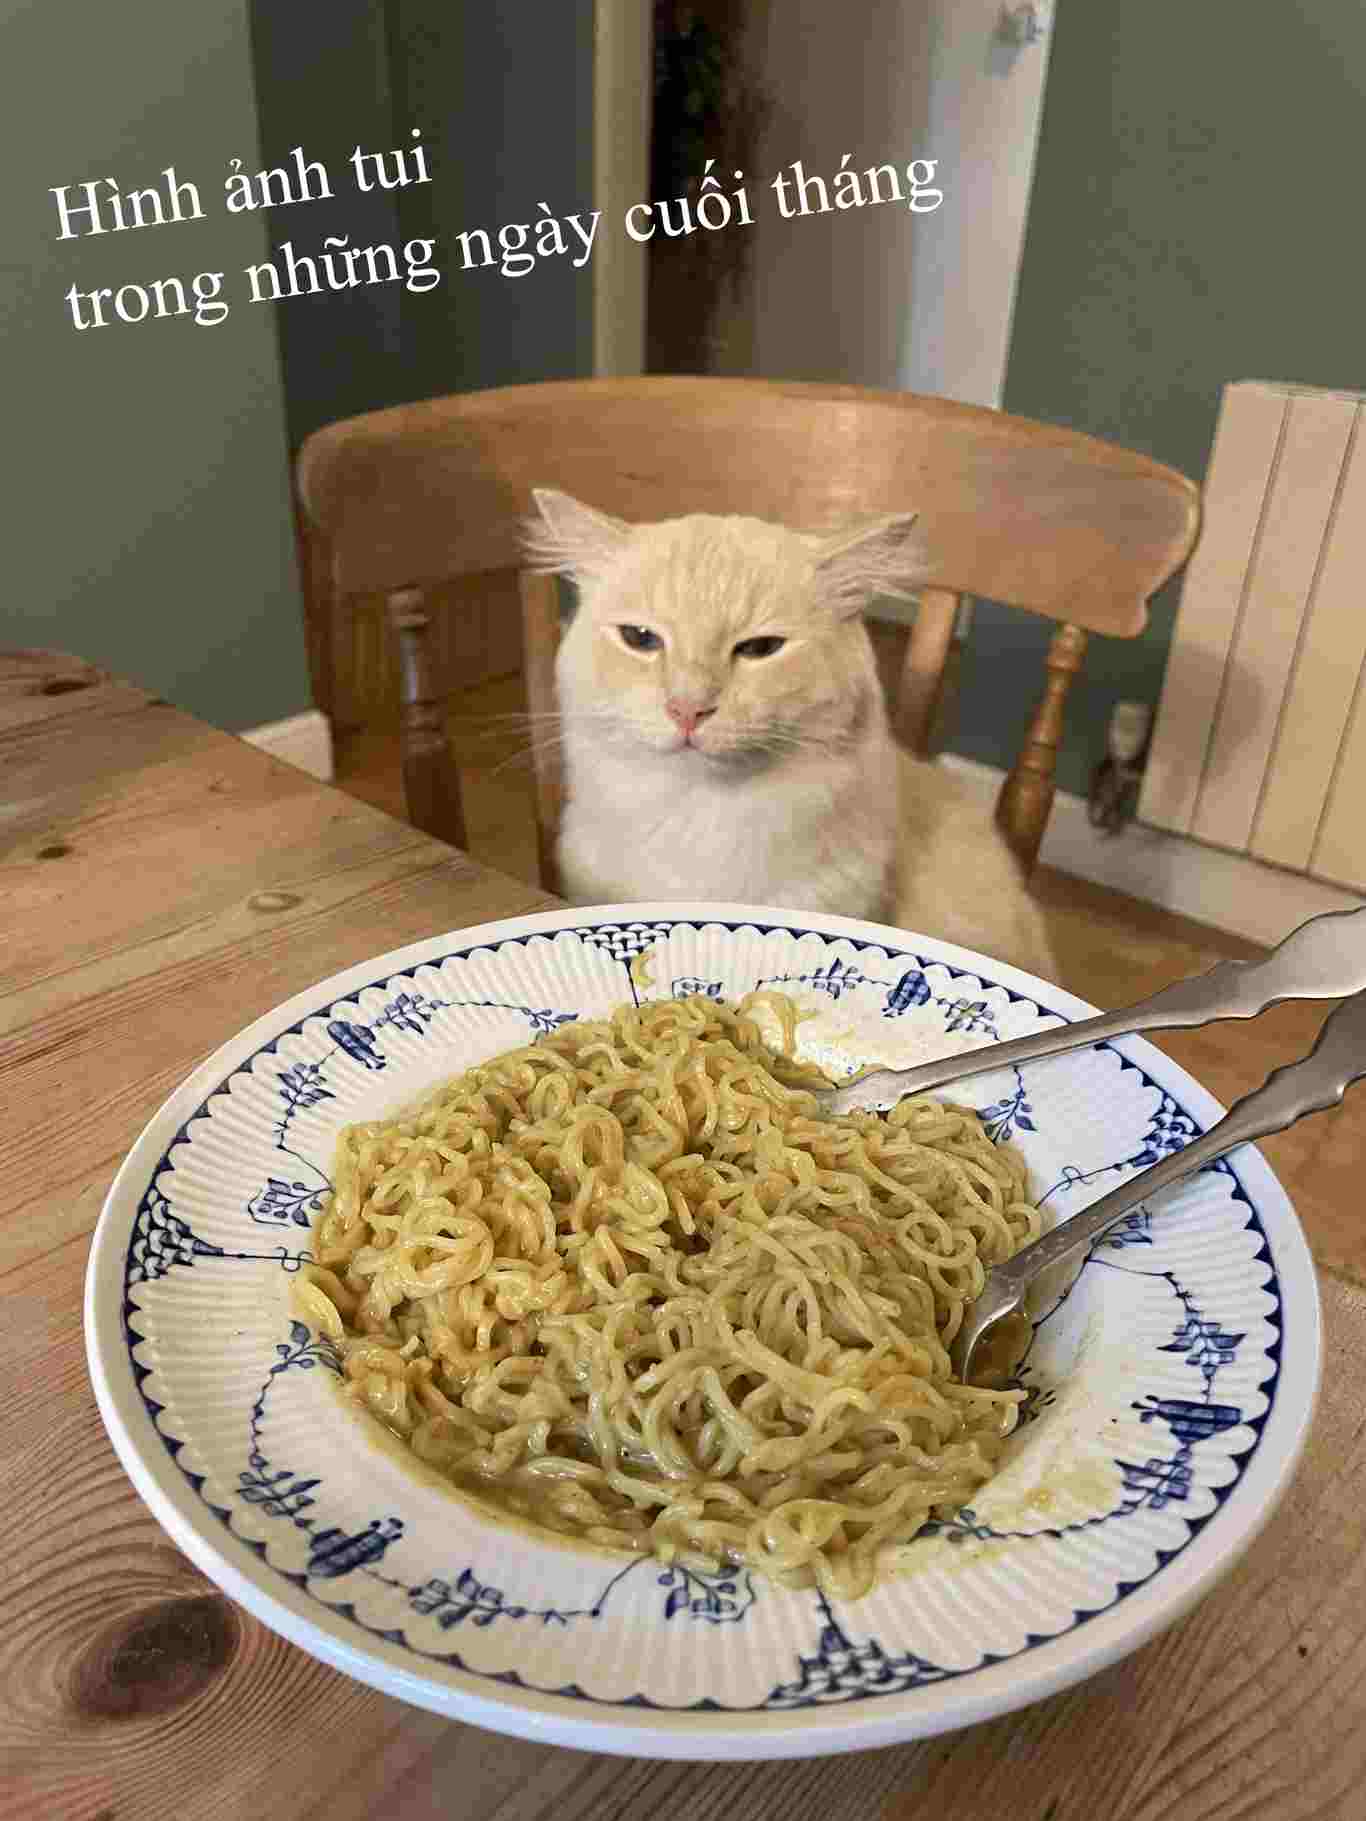 Hình ảnh mèo ăn mì